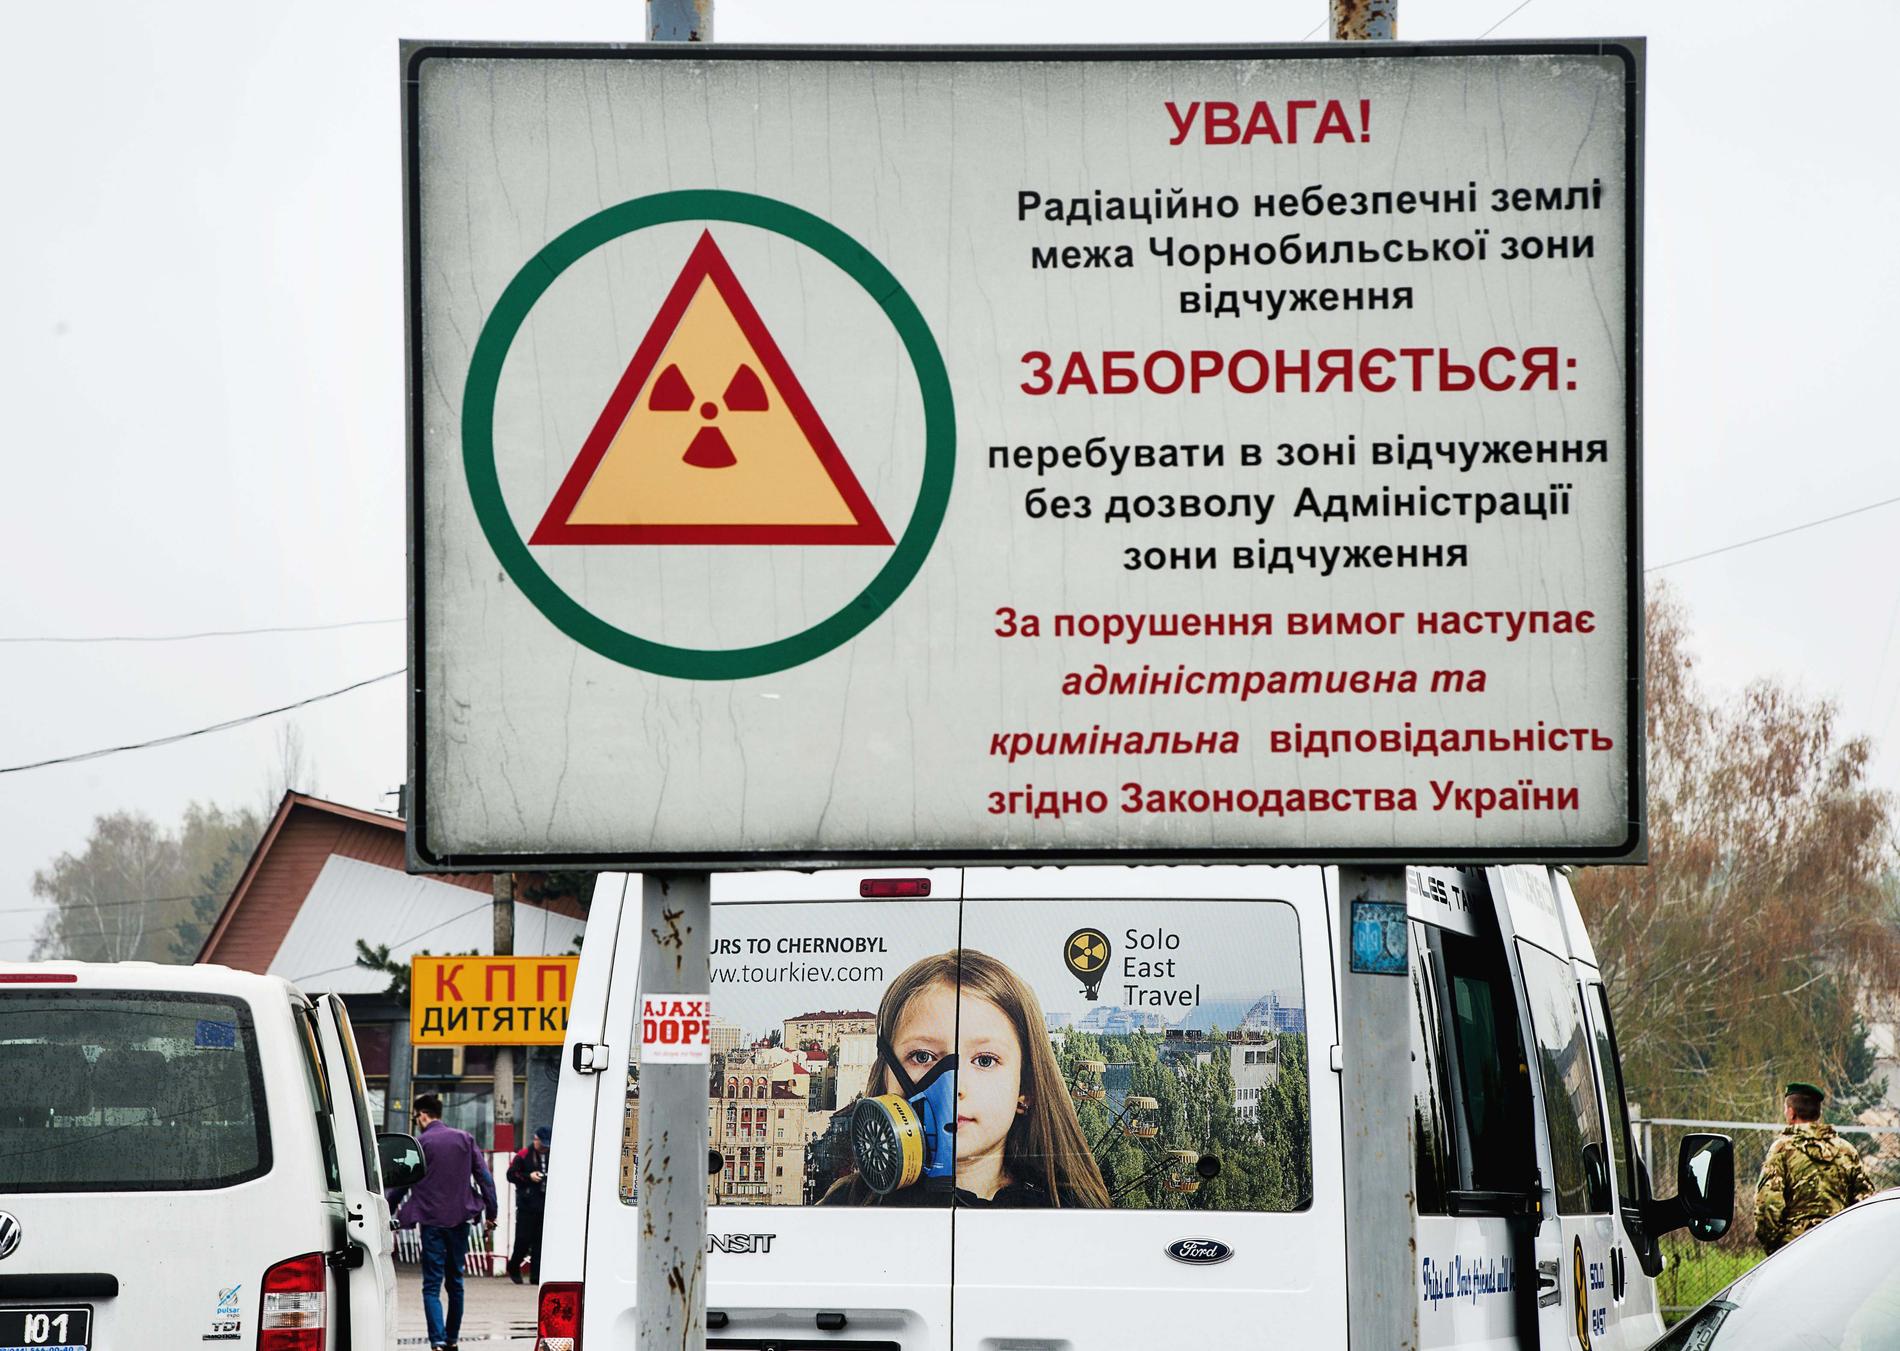 Trots att det gått 35 år präglar olyckan fortfarande Tjernobyl.